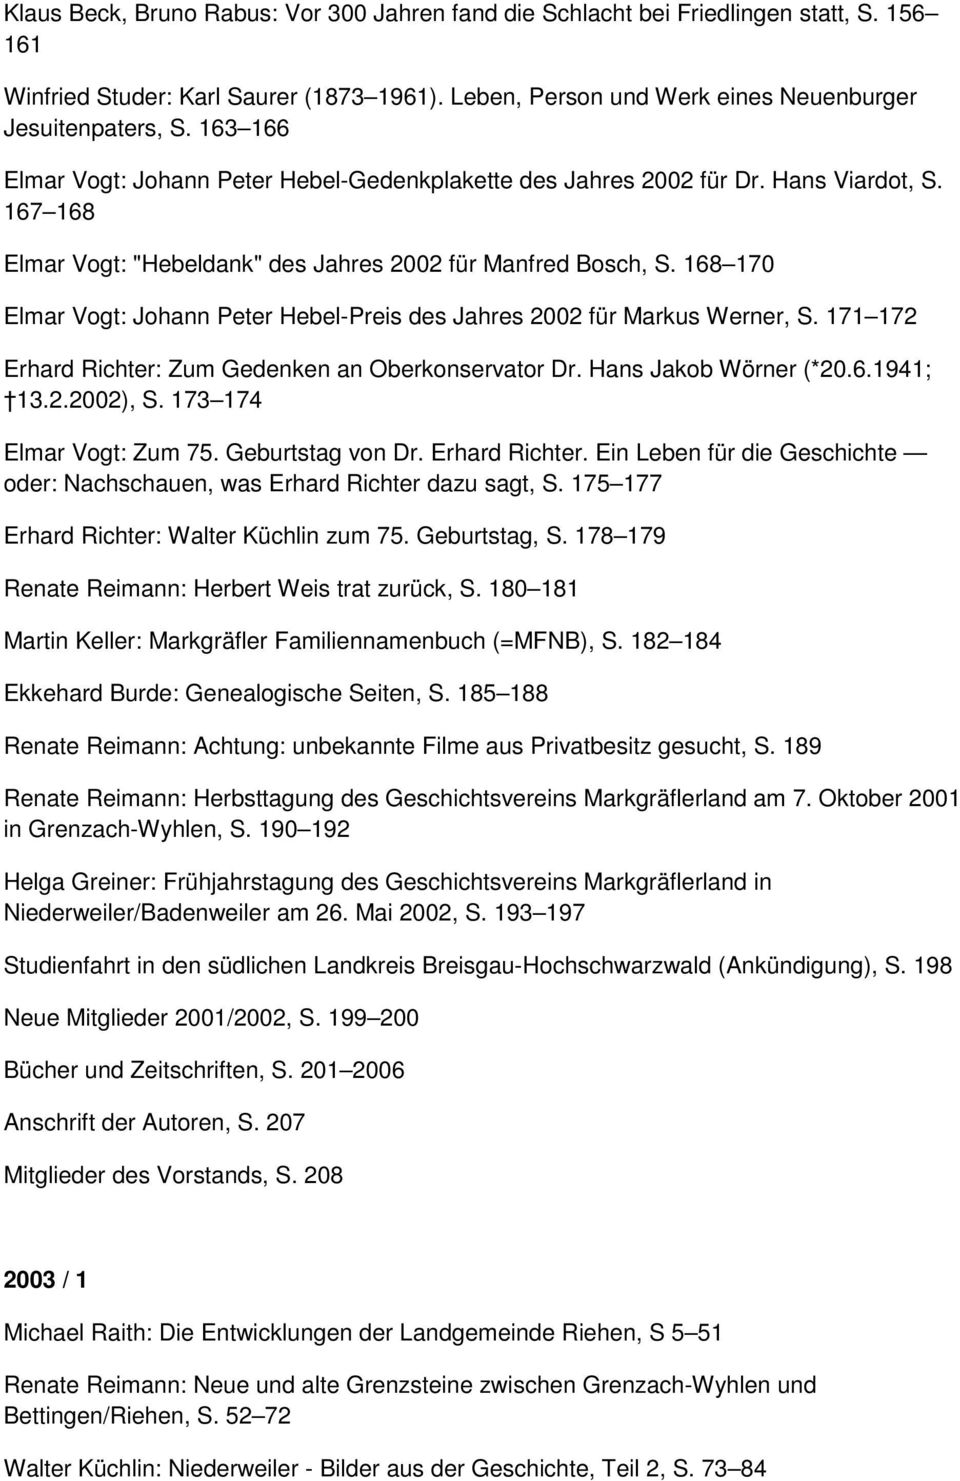 168 170 Elmar Vogt: Johann Peter Hebel-Preis des Jahres 2002 für Markus Werner, S. 171 172 Erhard Richter: Zum Gedenken an Oberkonservator Dr. Hans Jakob Wörner (*20.6.1941; 13.2.2002), S.